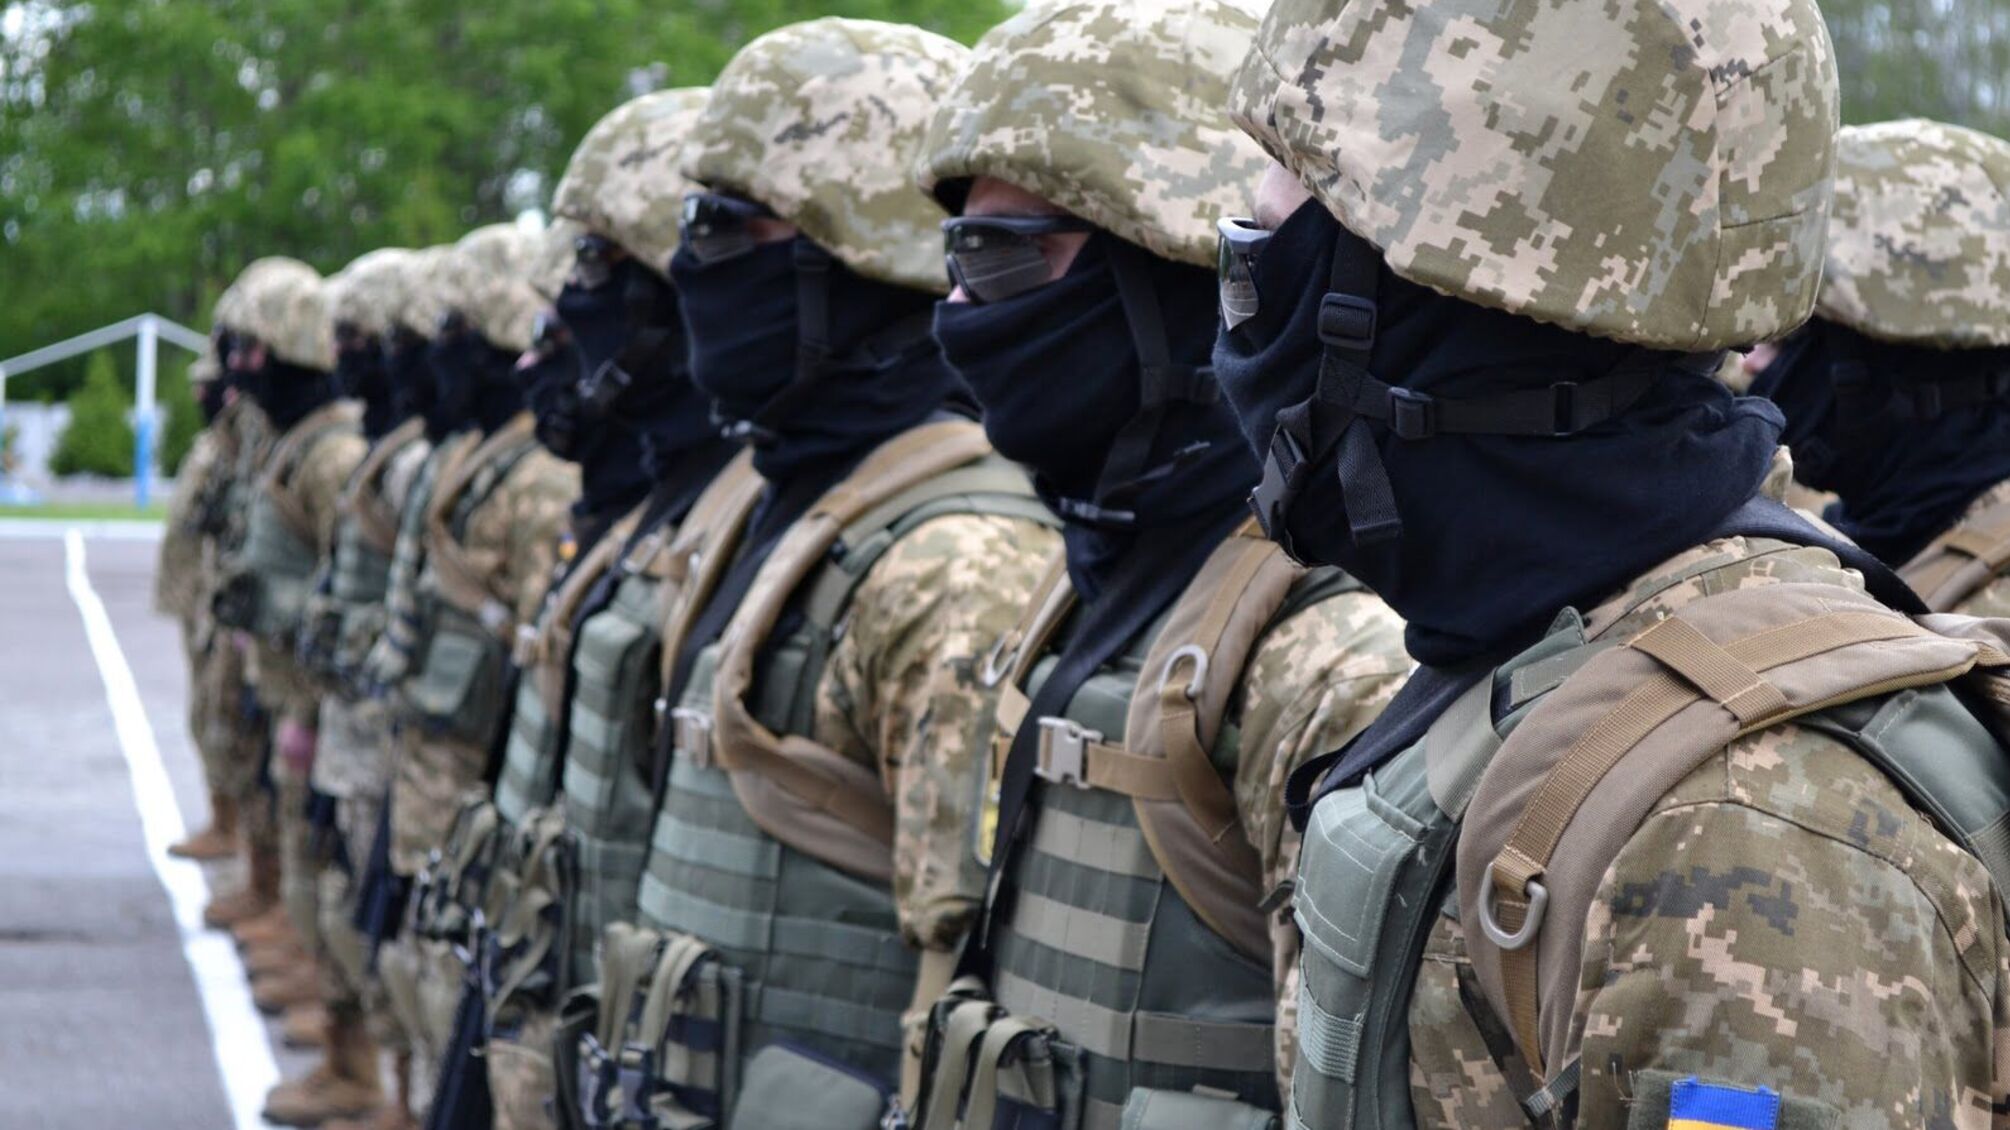 У селище в Харківській області прибули спецпризначенці: правоохоронці побоюються повторення конфлікту з ромами